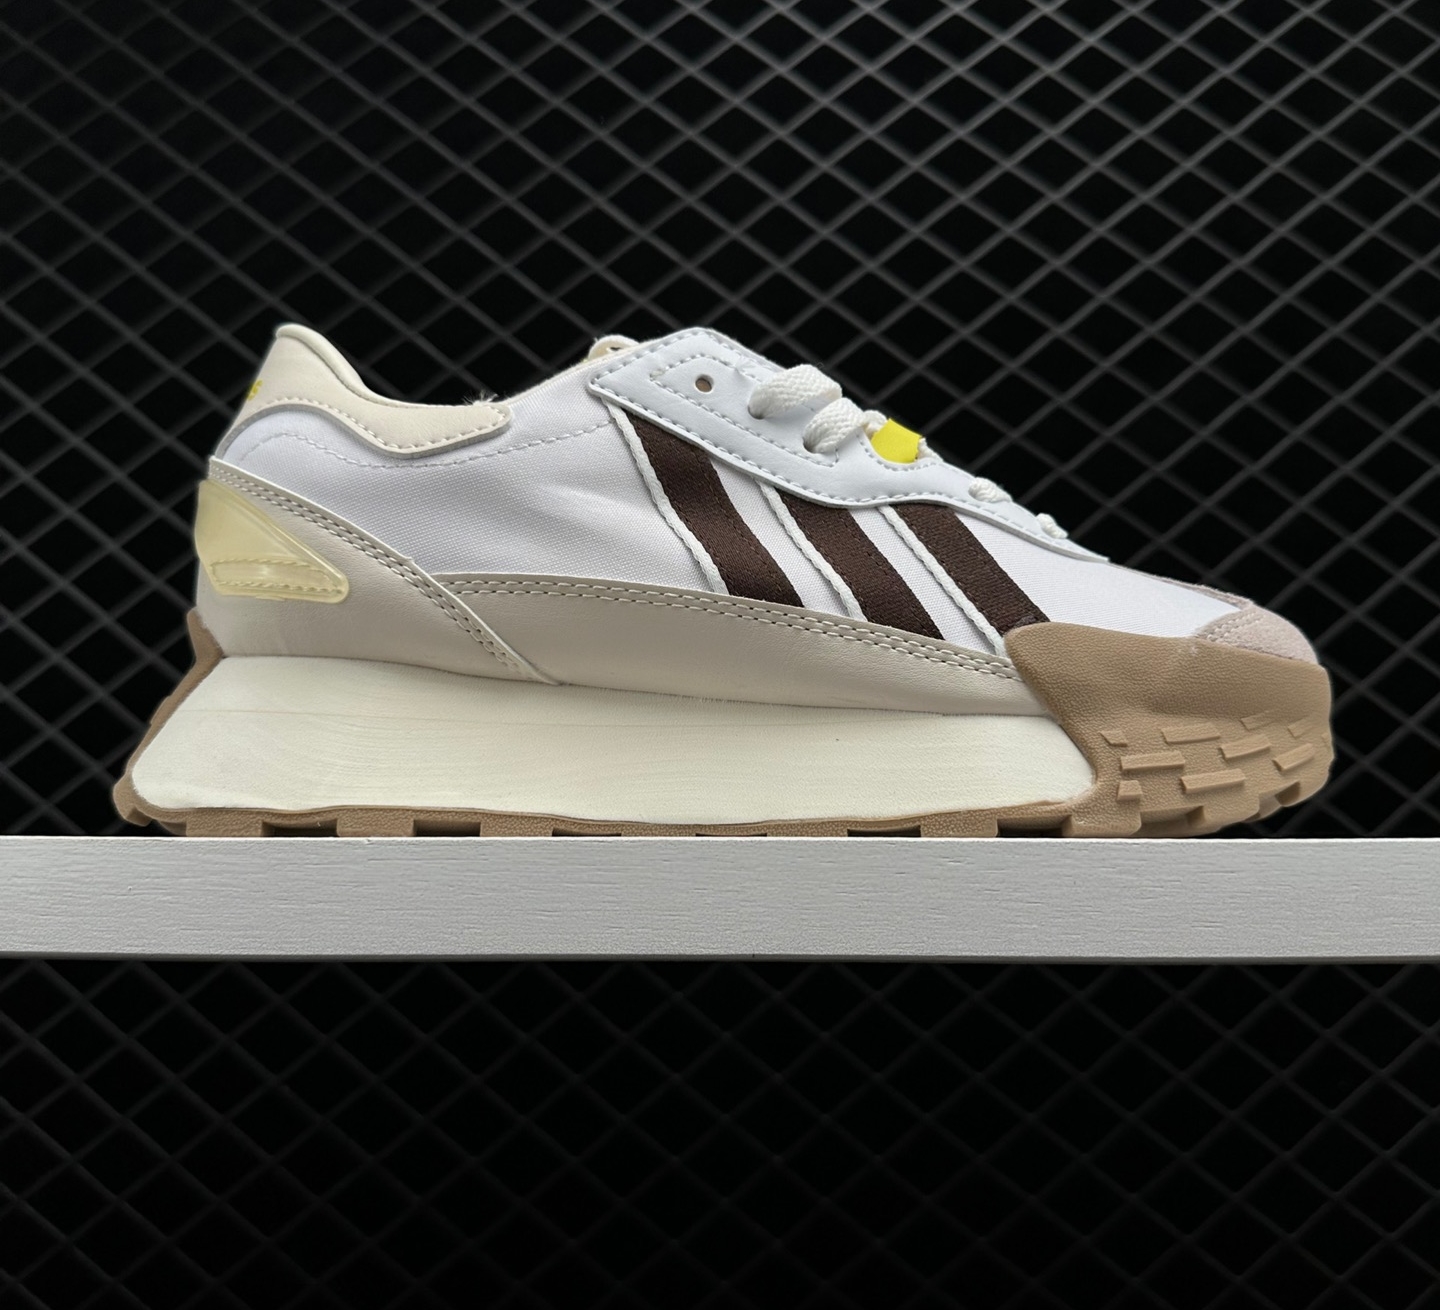 Adidas Neo Futro Mixr Shoes 'White Khaki' - Sleek and Stylish Sneakers